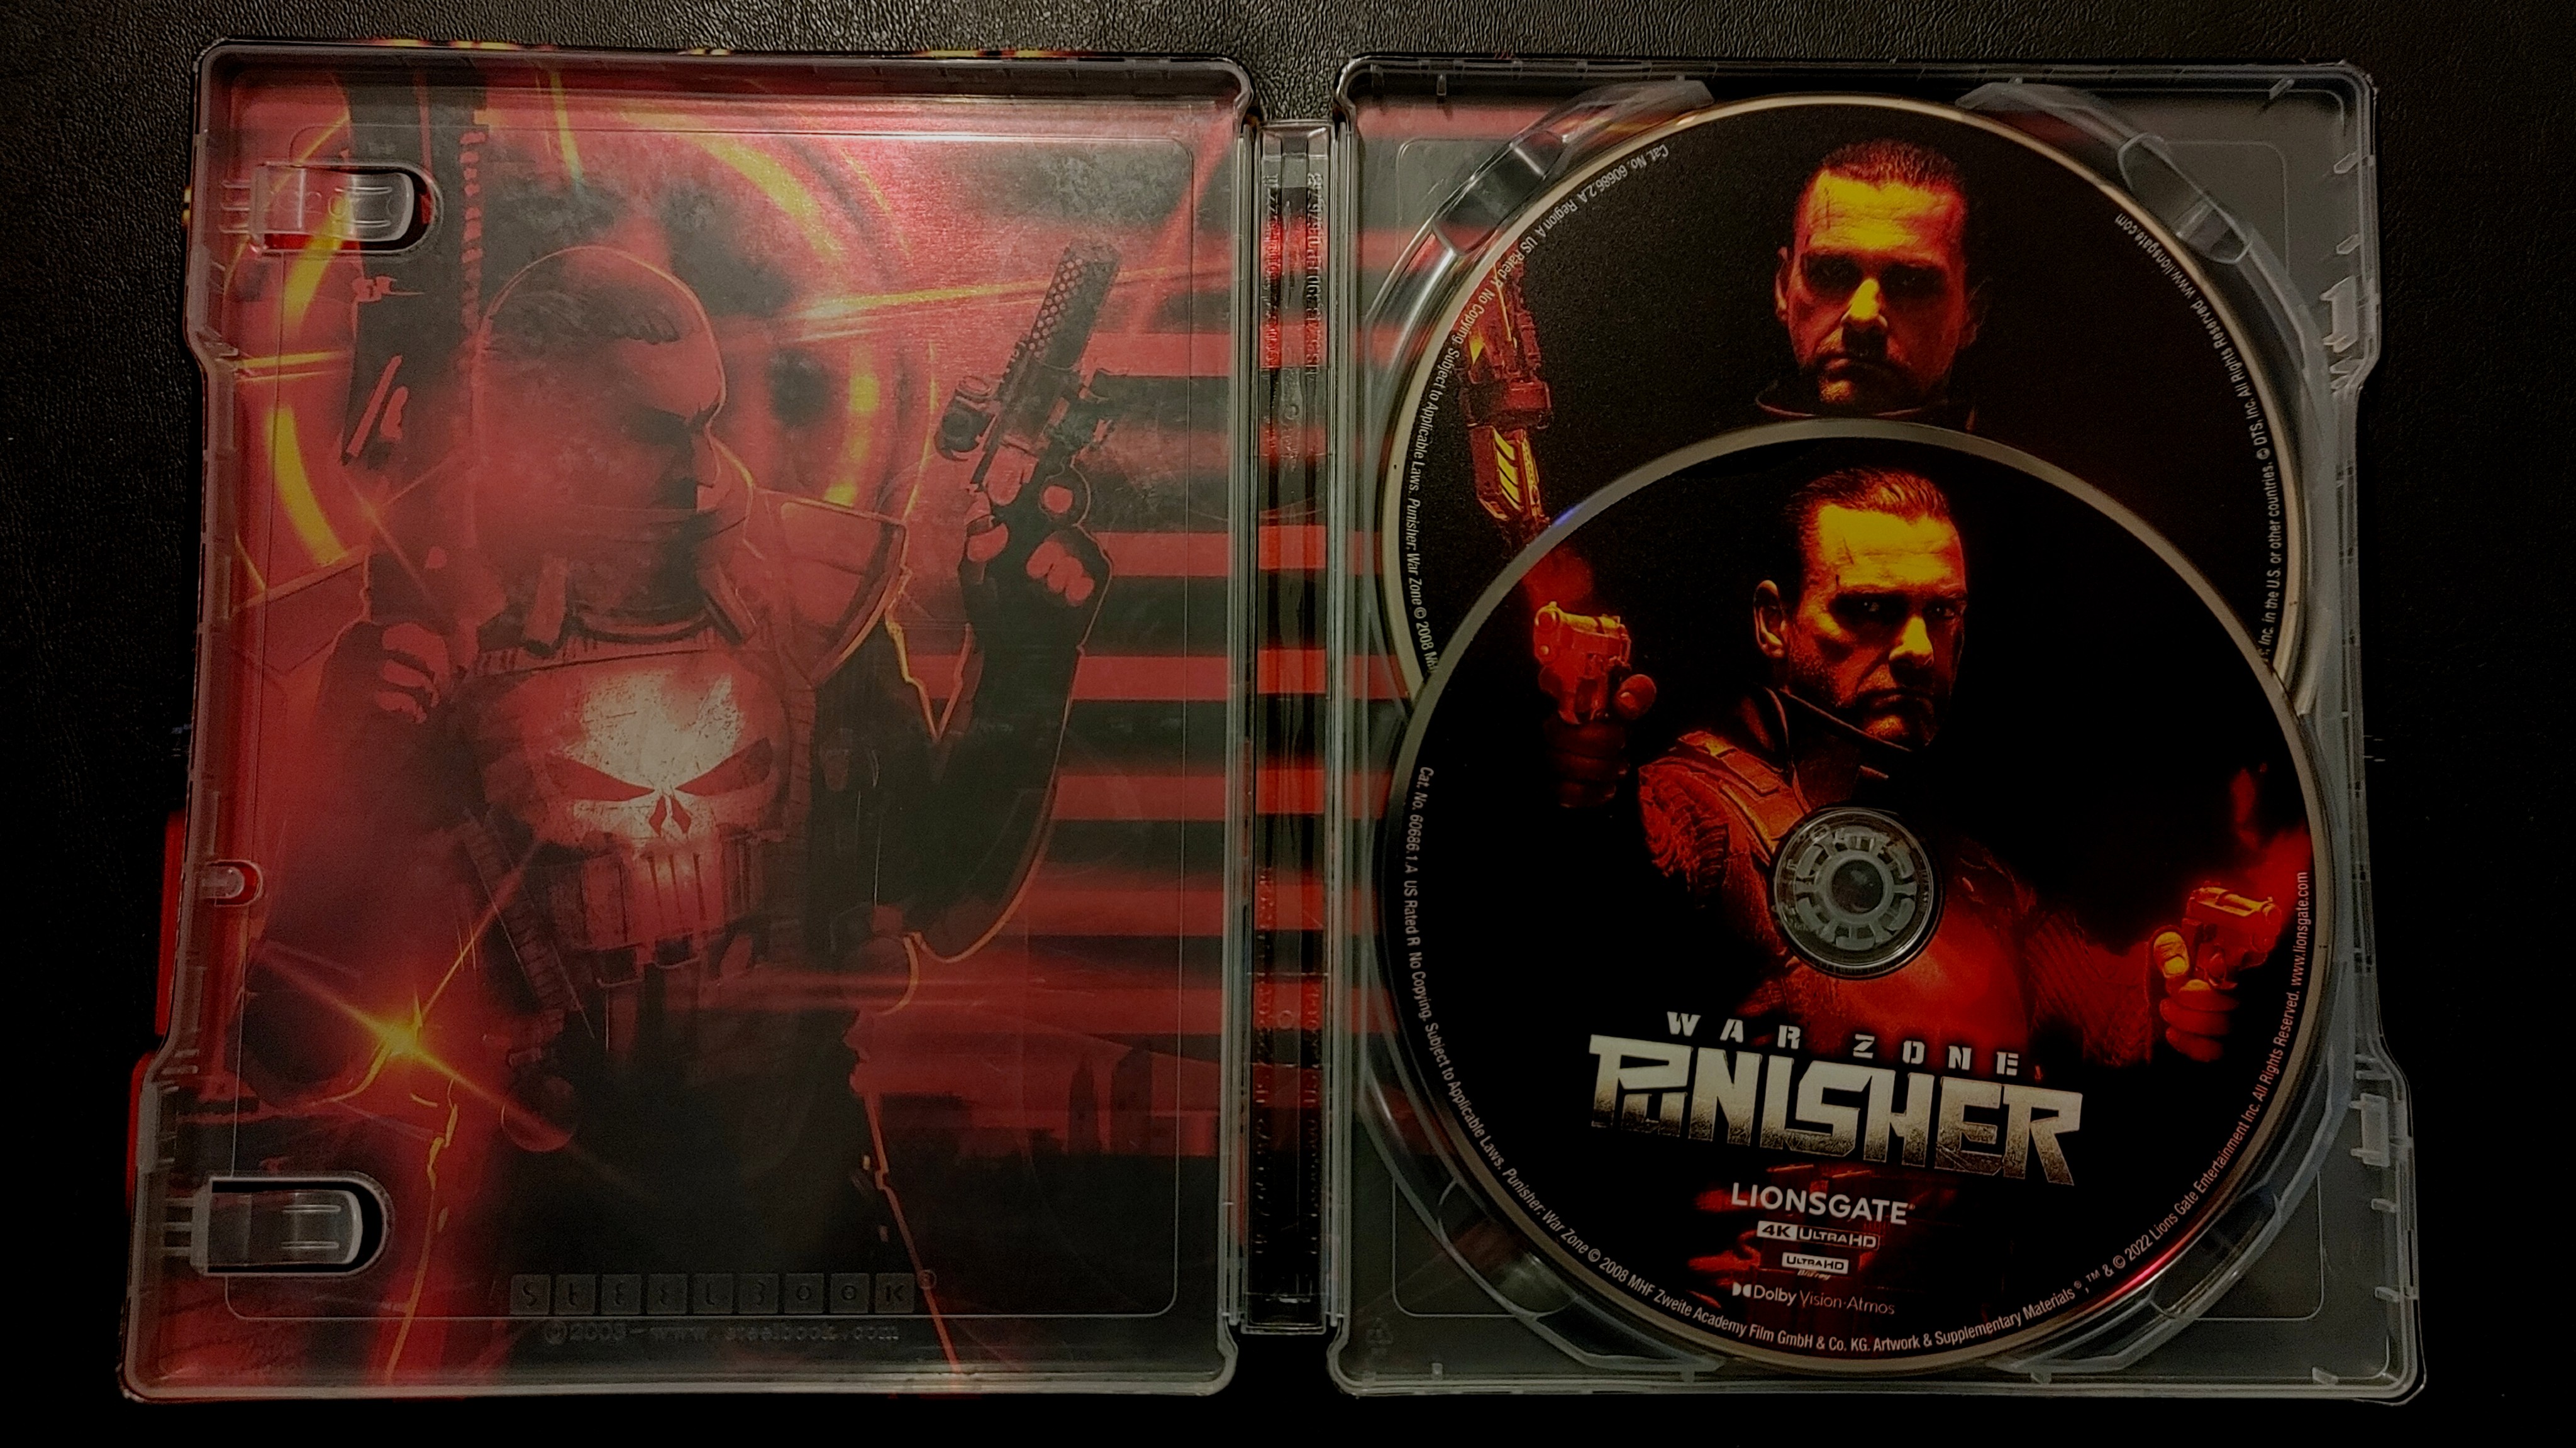 Punisher: War Zone (2008) : r/badMovies